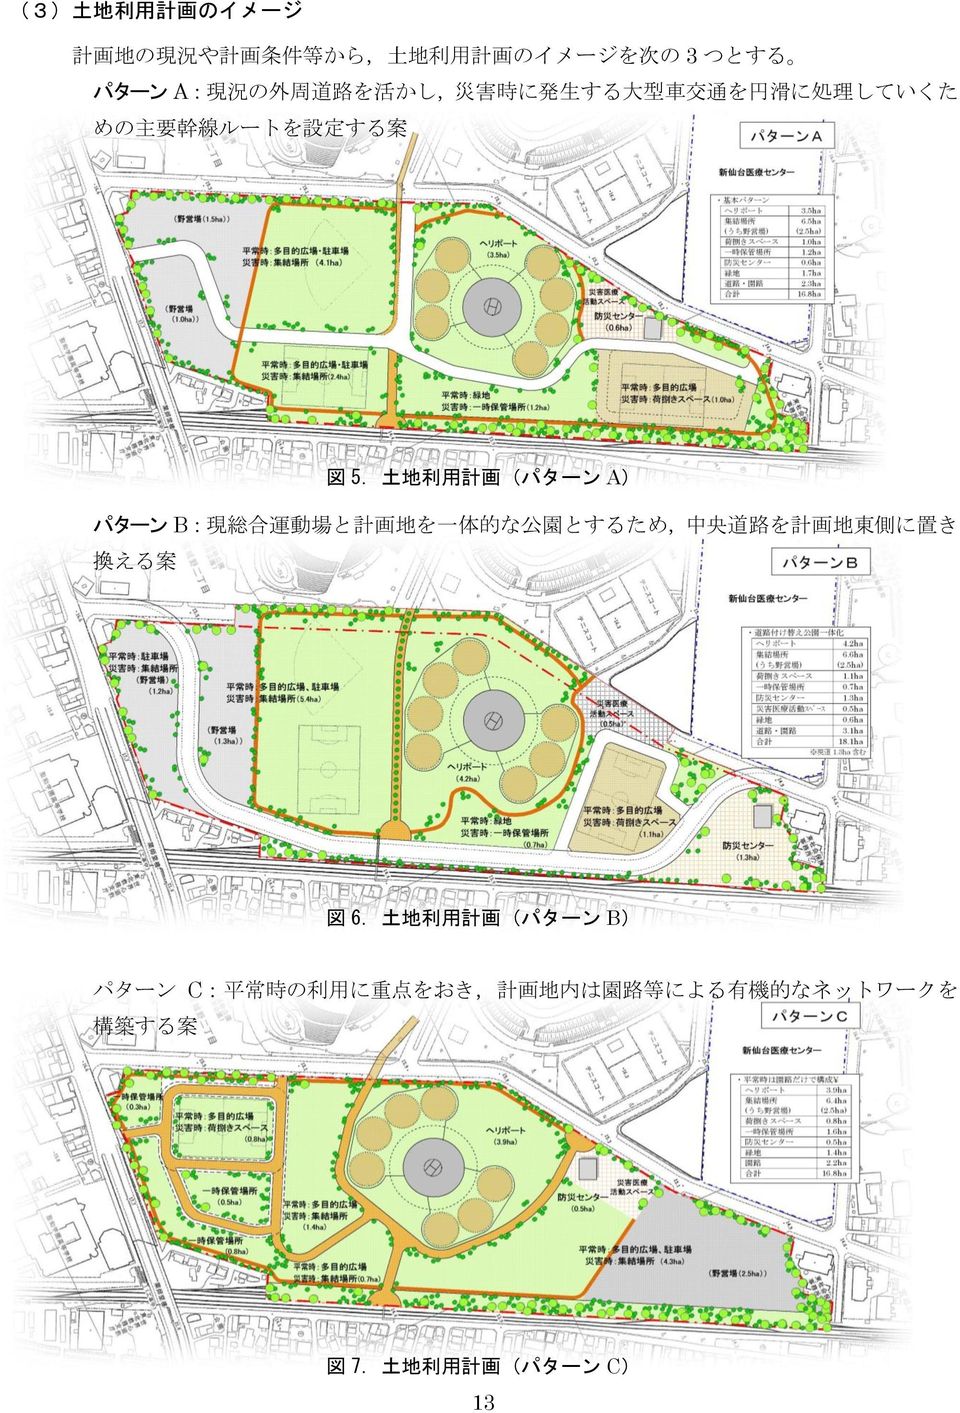 一 体 的 な 公 園 とするため, 中 央 道 路 を 計 画 地 東 側 に 置 き 換 える 案 図 5. 土 地 利 用 計 画 (パターン A) 図 6.